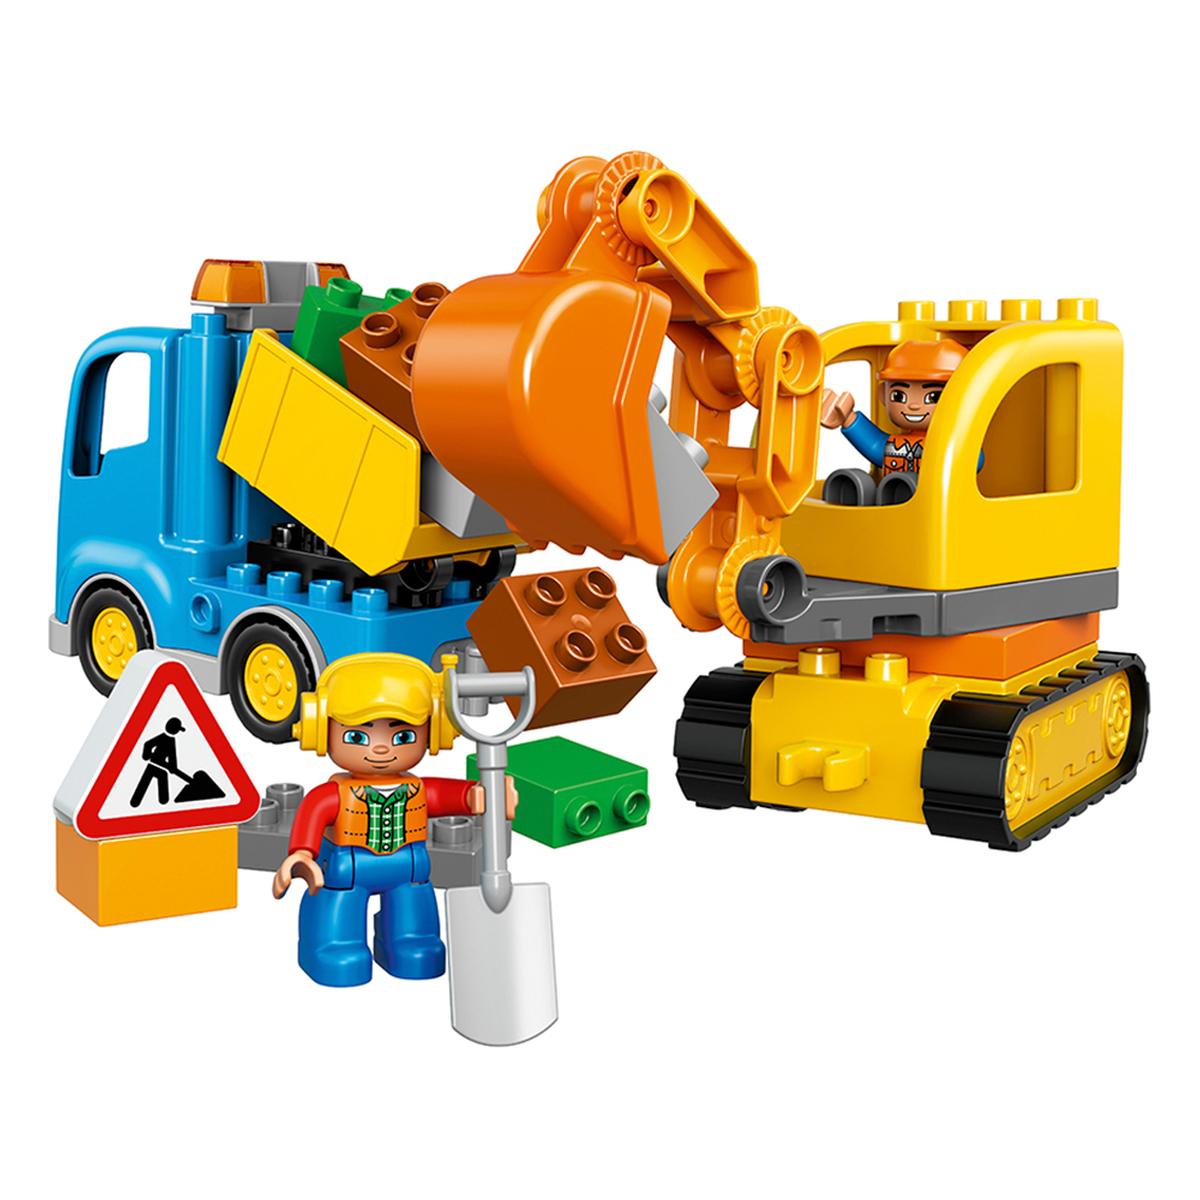 LEGO DUPLO - Camión y Excavadora - 10812 | Duplo Otros | Toys"R"Us España